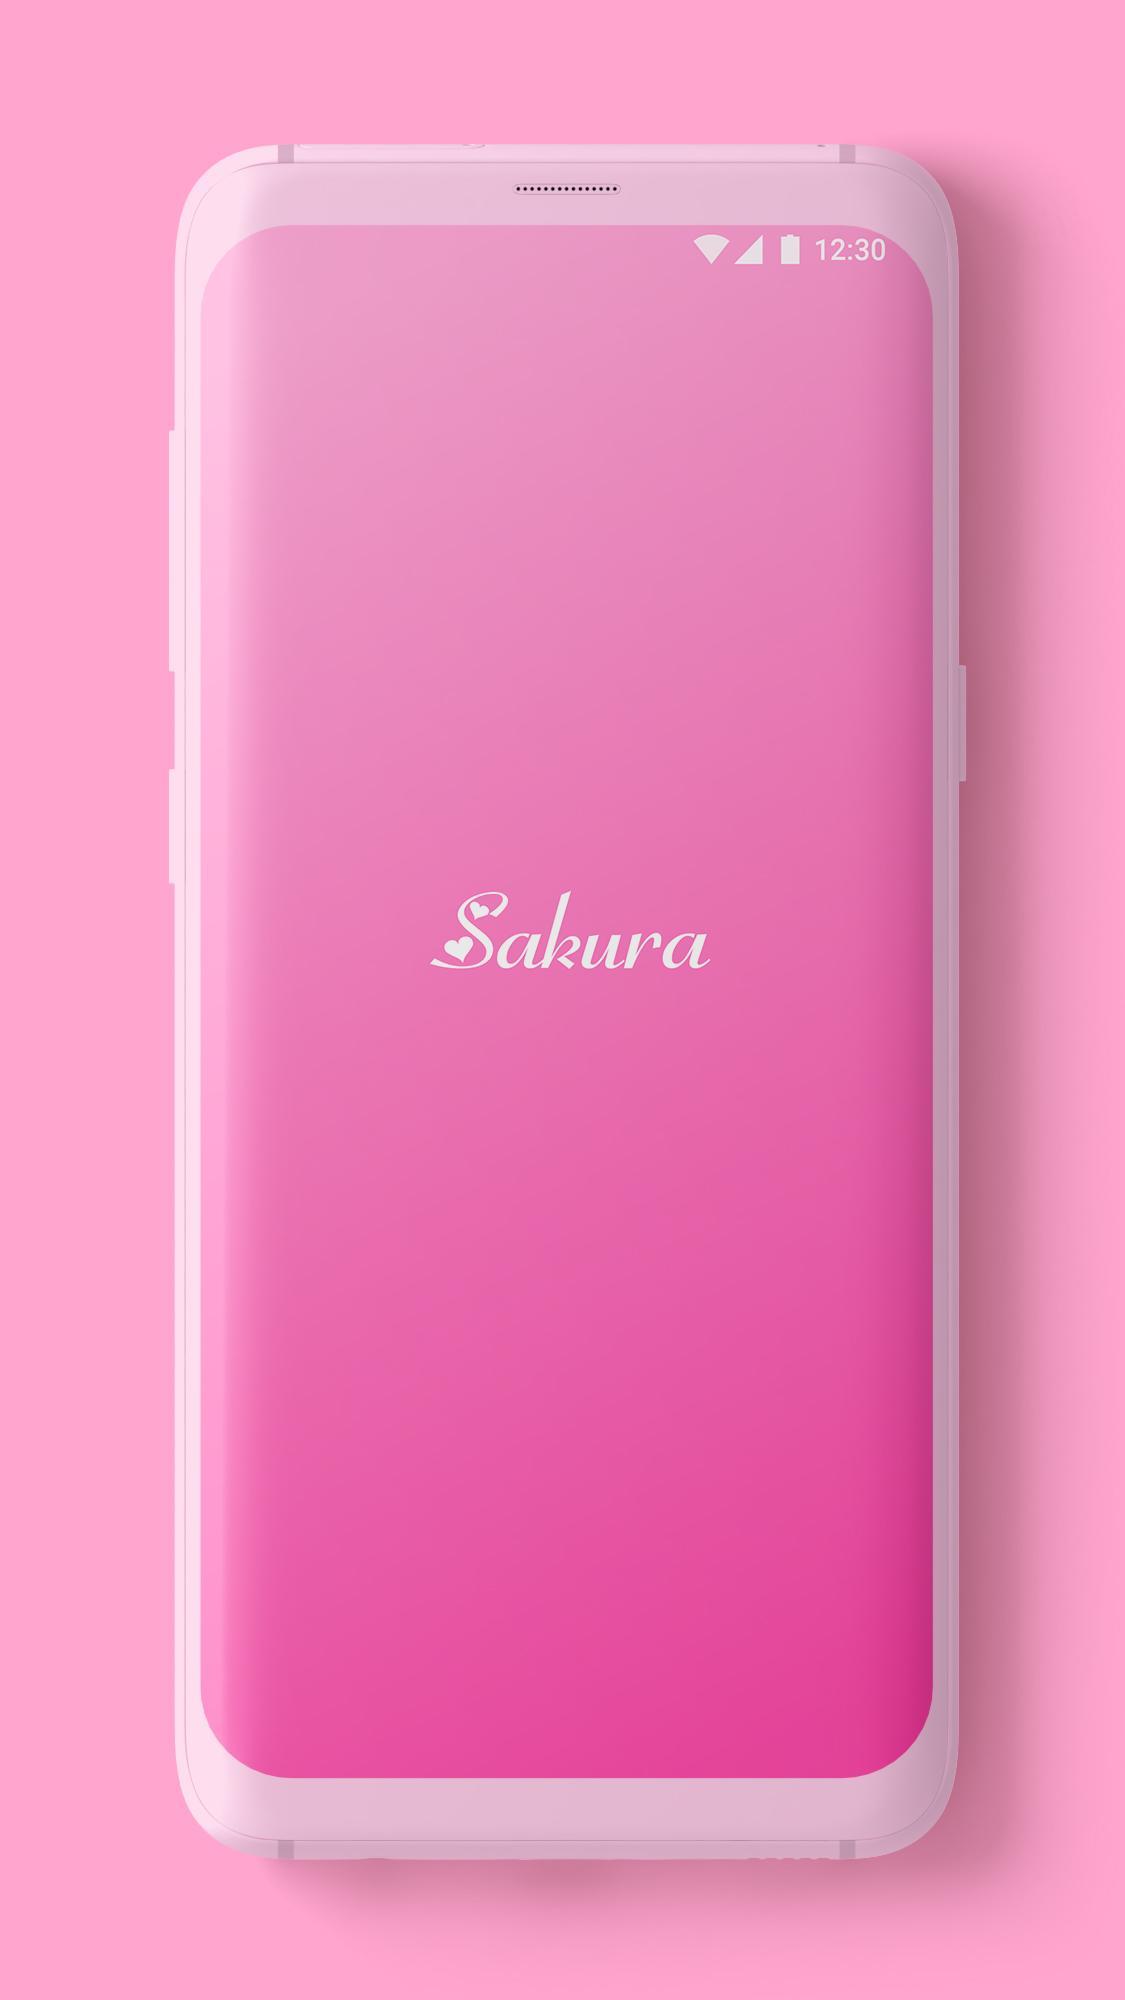 Sakura Izone Beautiful Wallpaper 19 2k Full Hd For Android Apk Download